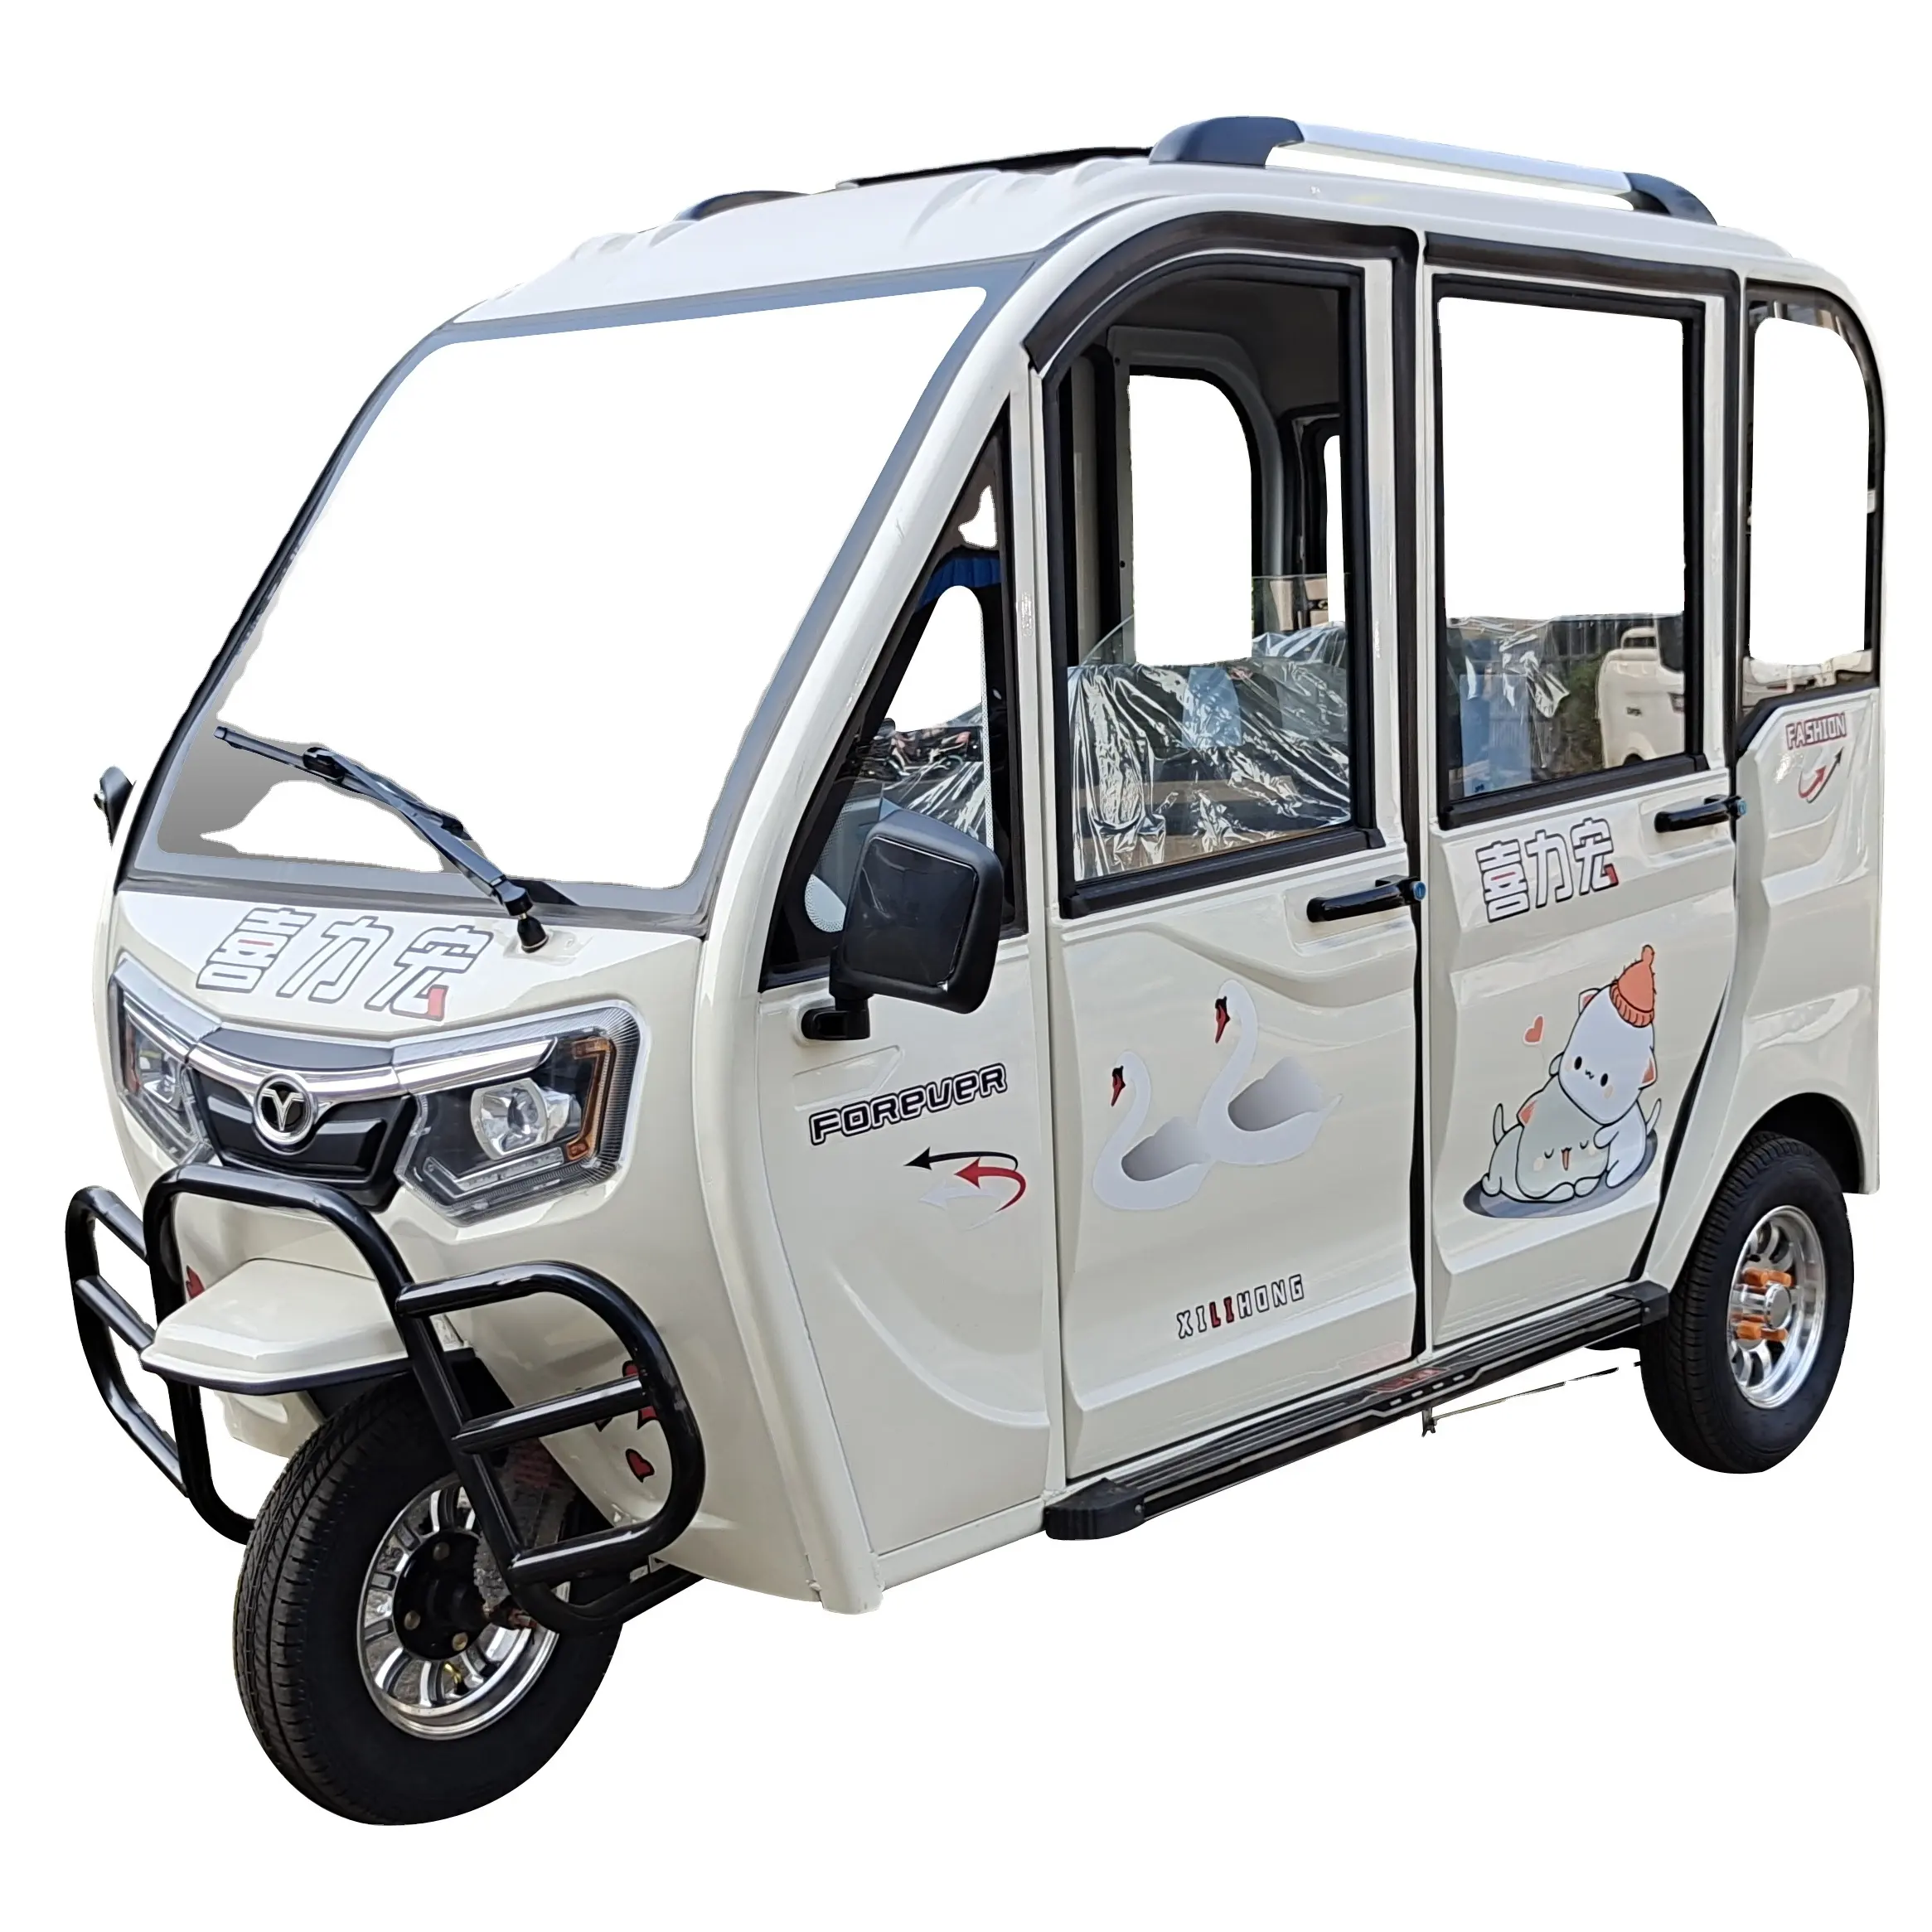 Chang liLead-acidバッテリー価格格安クローズドラグジュアリー3輪オートバイ大人用電気乗客三輪車3席付き